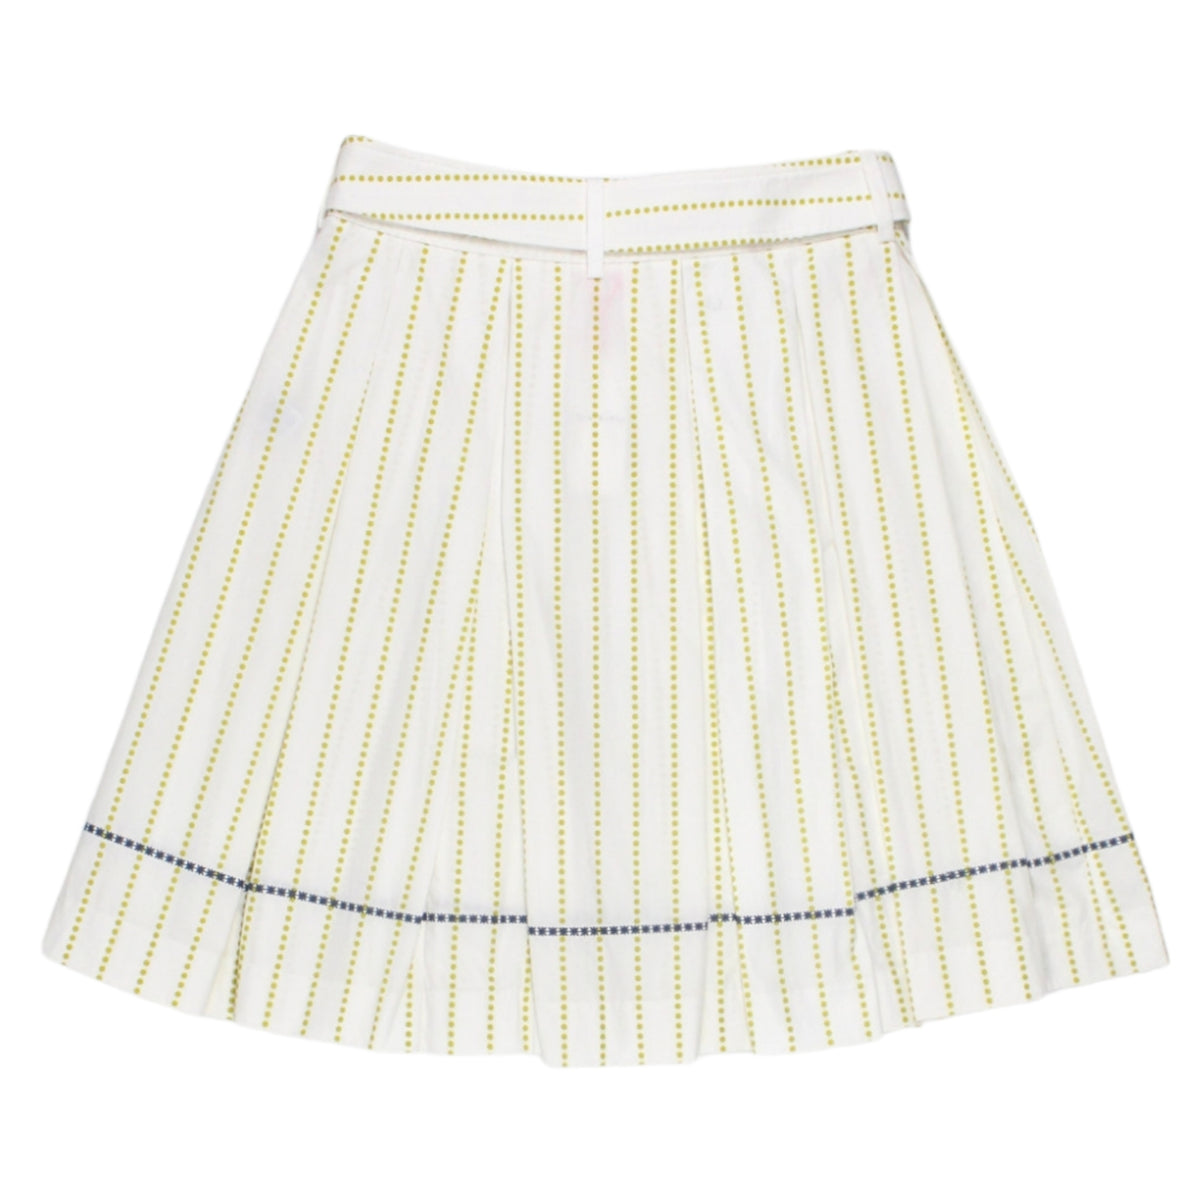 Orla Kiely White Dot/Stripe Skirt